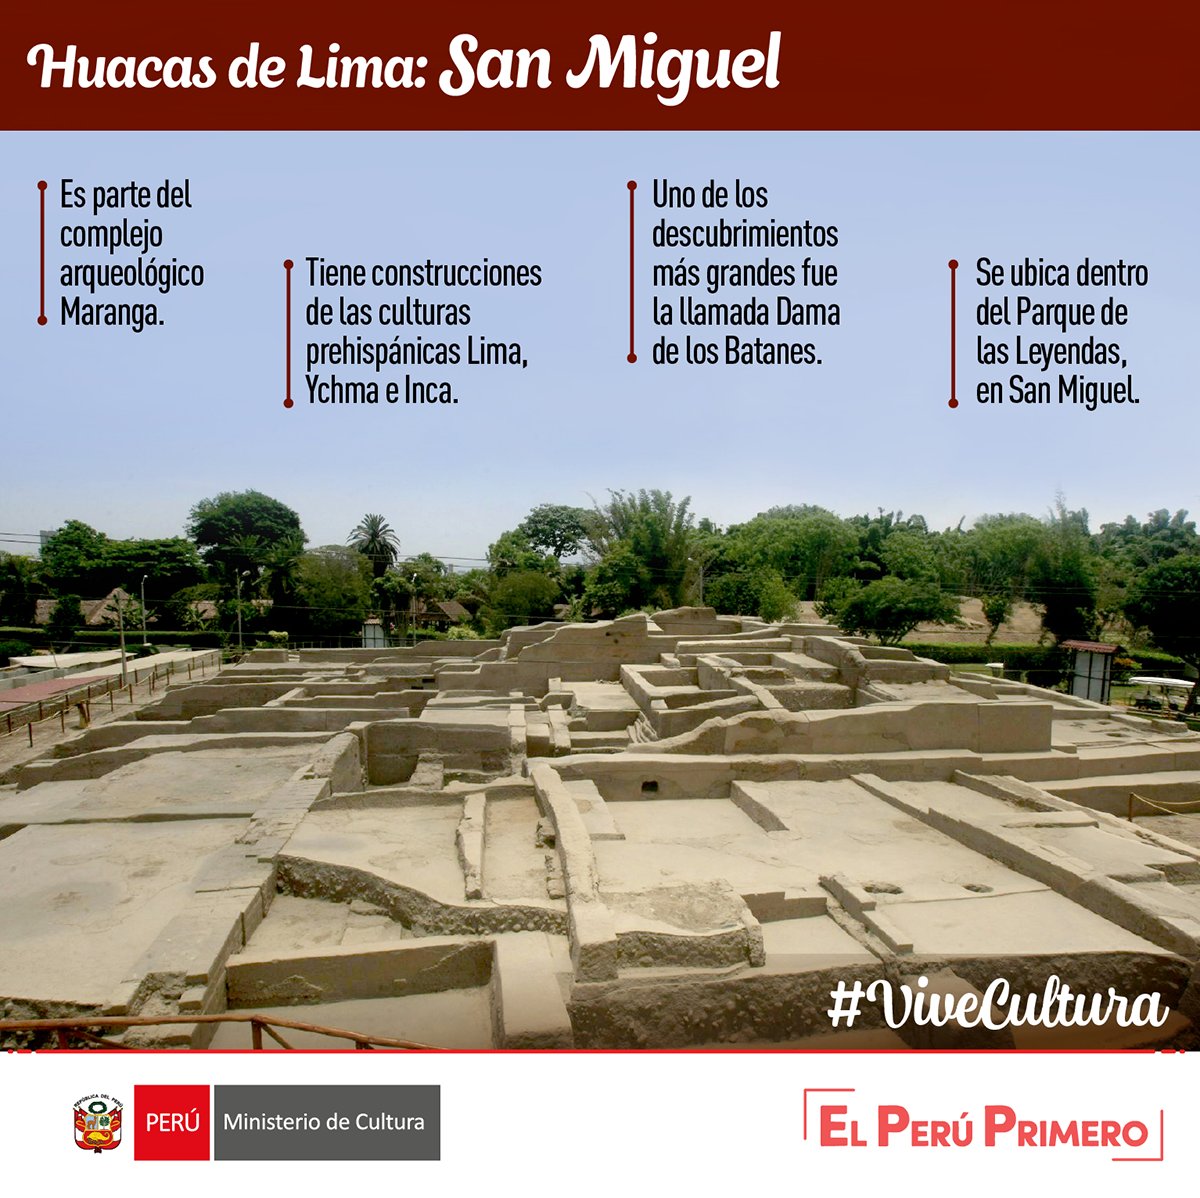 #ViveCultura | La huaca #SanMiguel es un lugar histórico y milenario al servicio de las familias peruanas para que puedan conocer su pasado e identidad con mucho orgullo. 💪🏽🇵🇪¿Que otras huacas conoces?